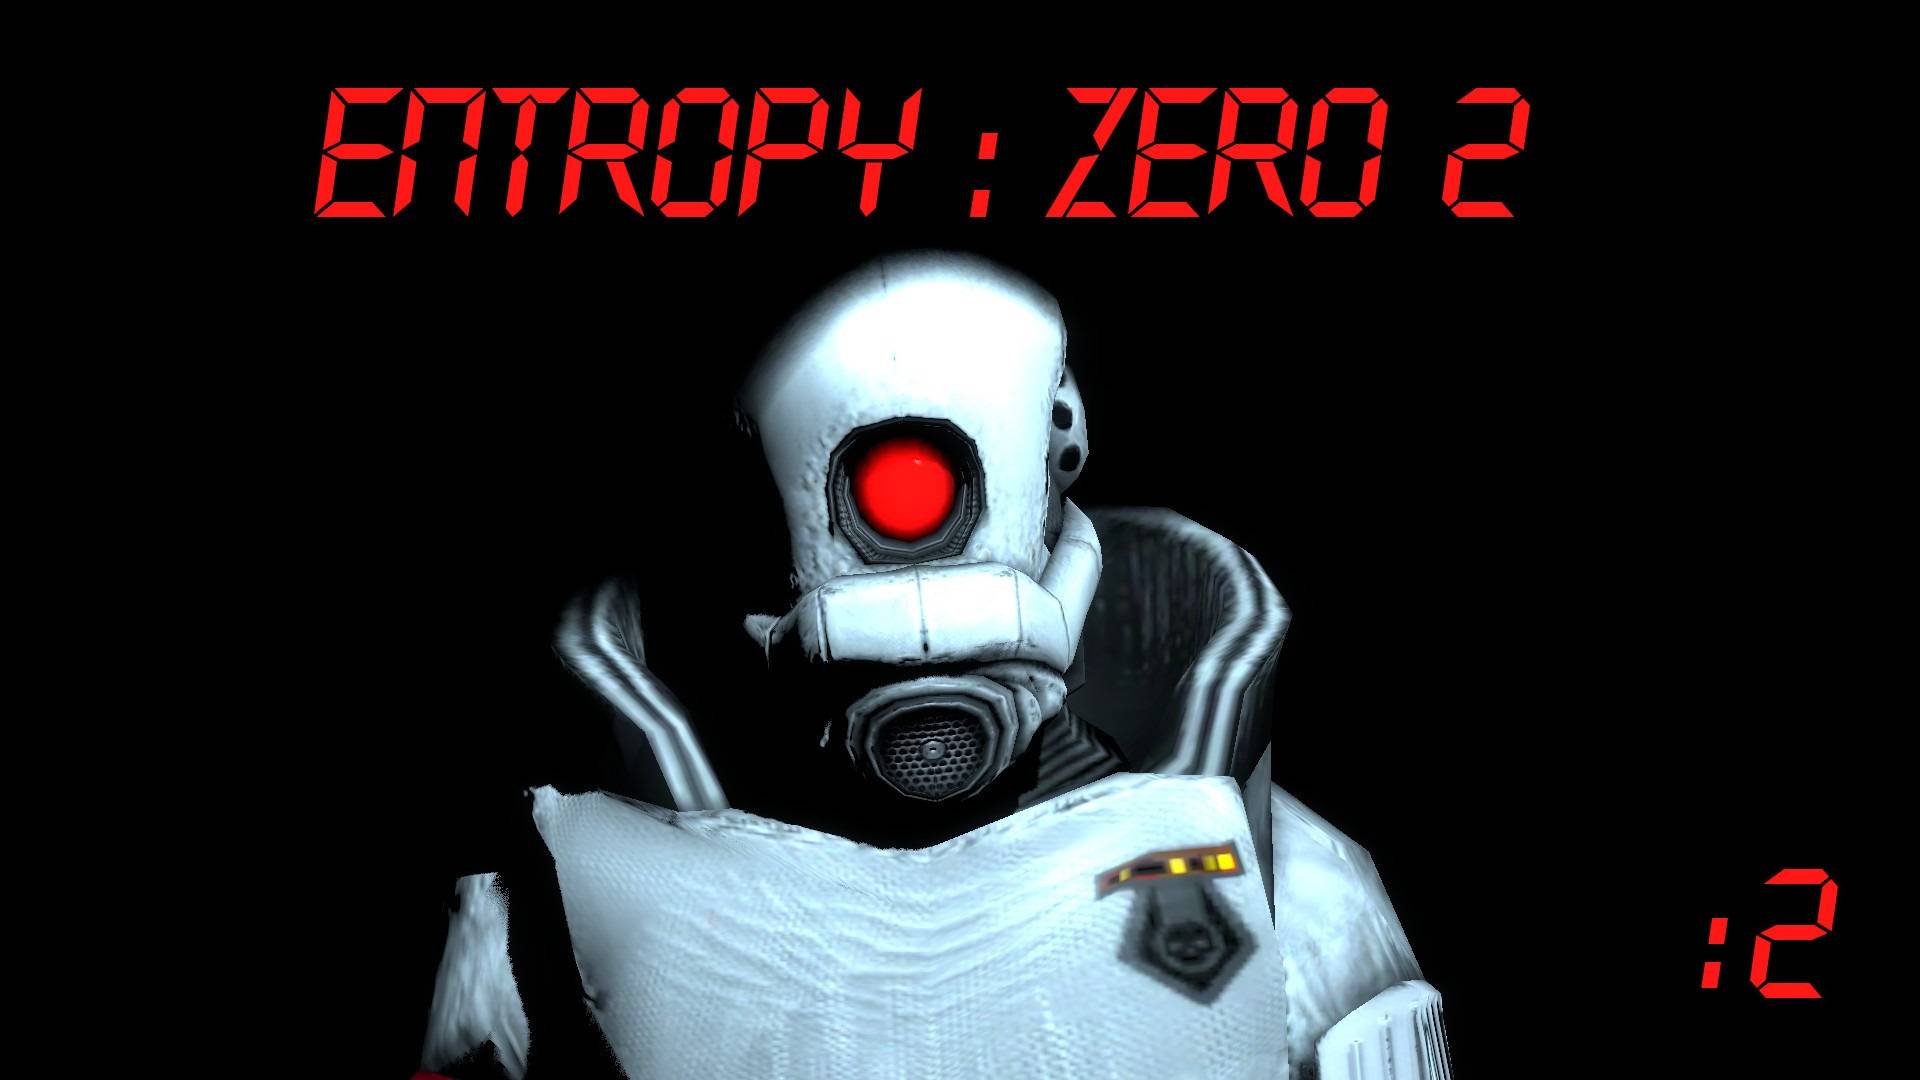 [PC] Entropy: Zero 2 | Стрим второй